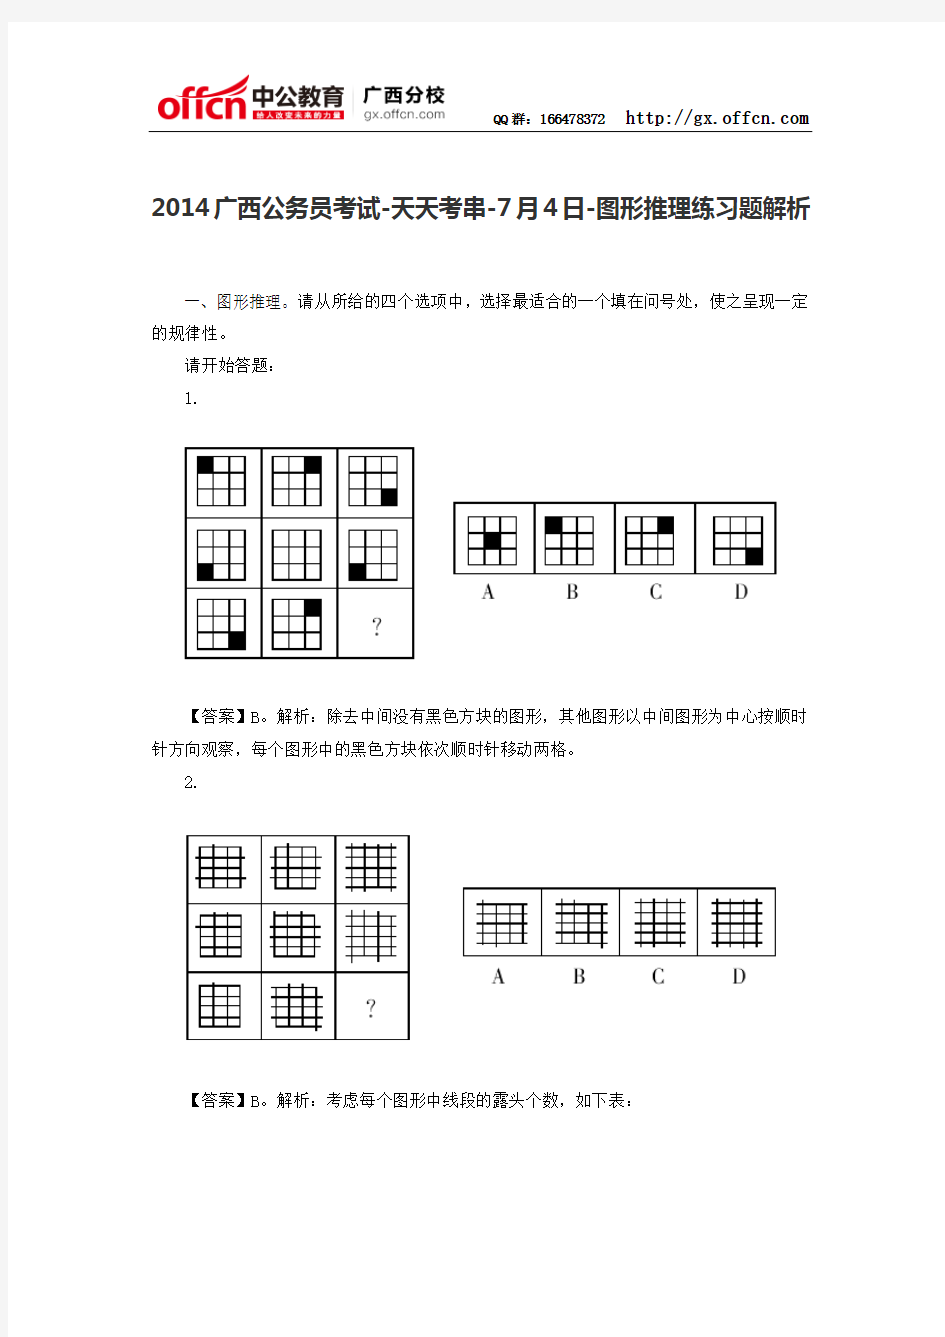 2014广西公务员考试-天天考串-7月4日-图形推理练习题解析